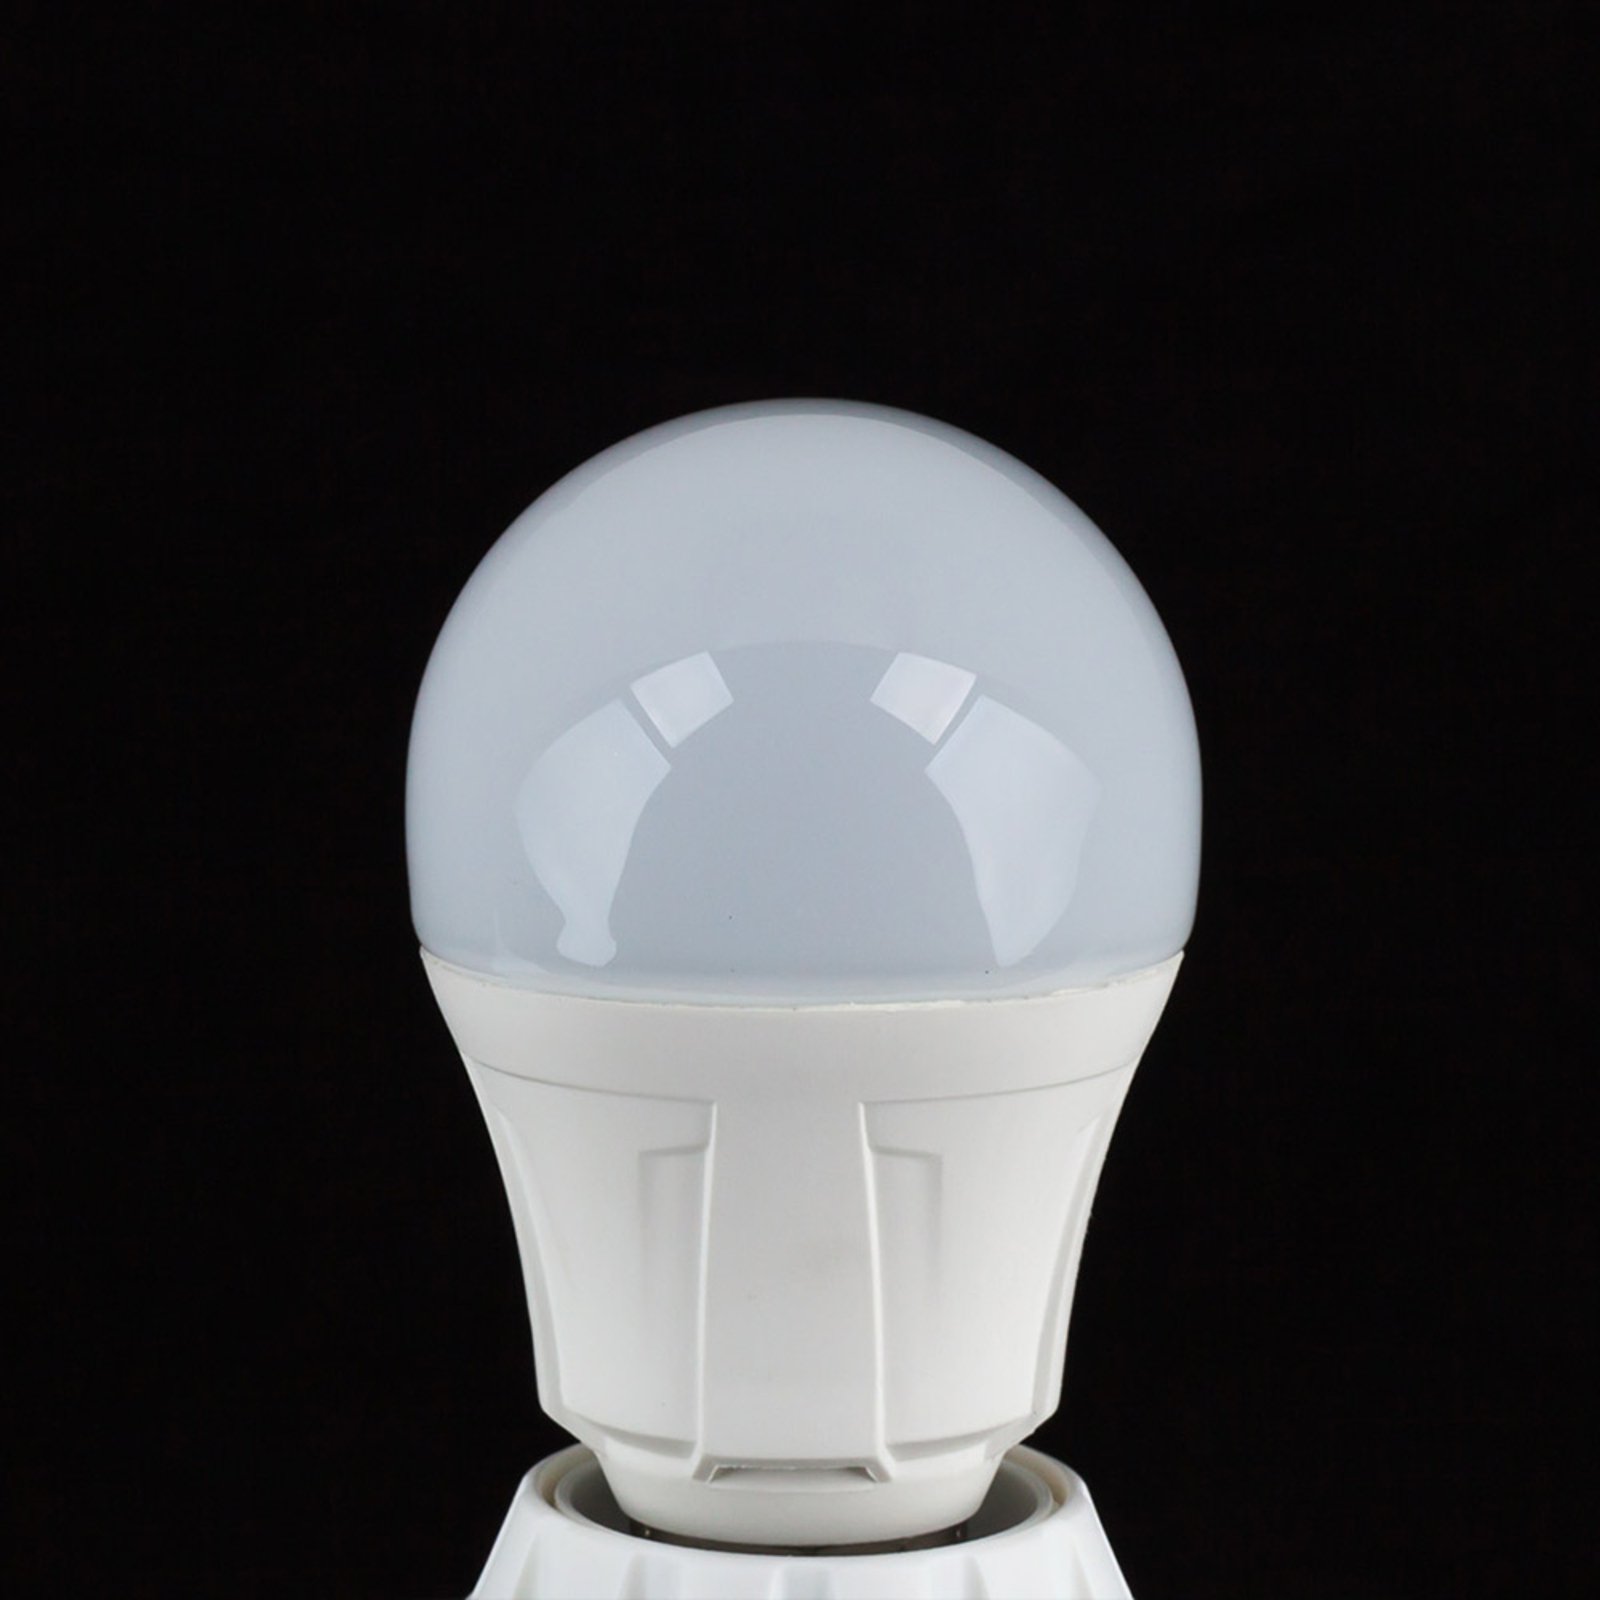 E27 11W 830 LED a lampadina bianco caldo